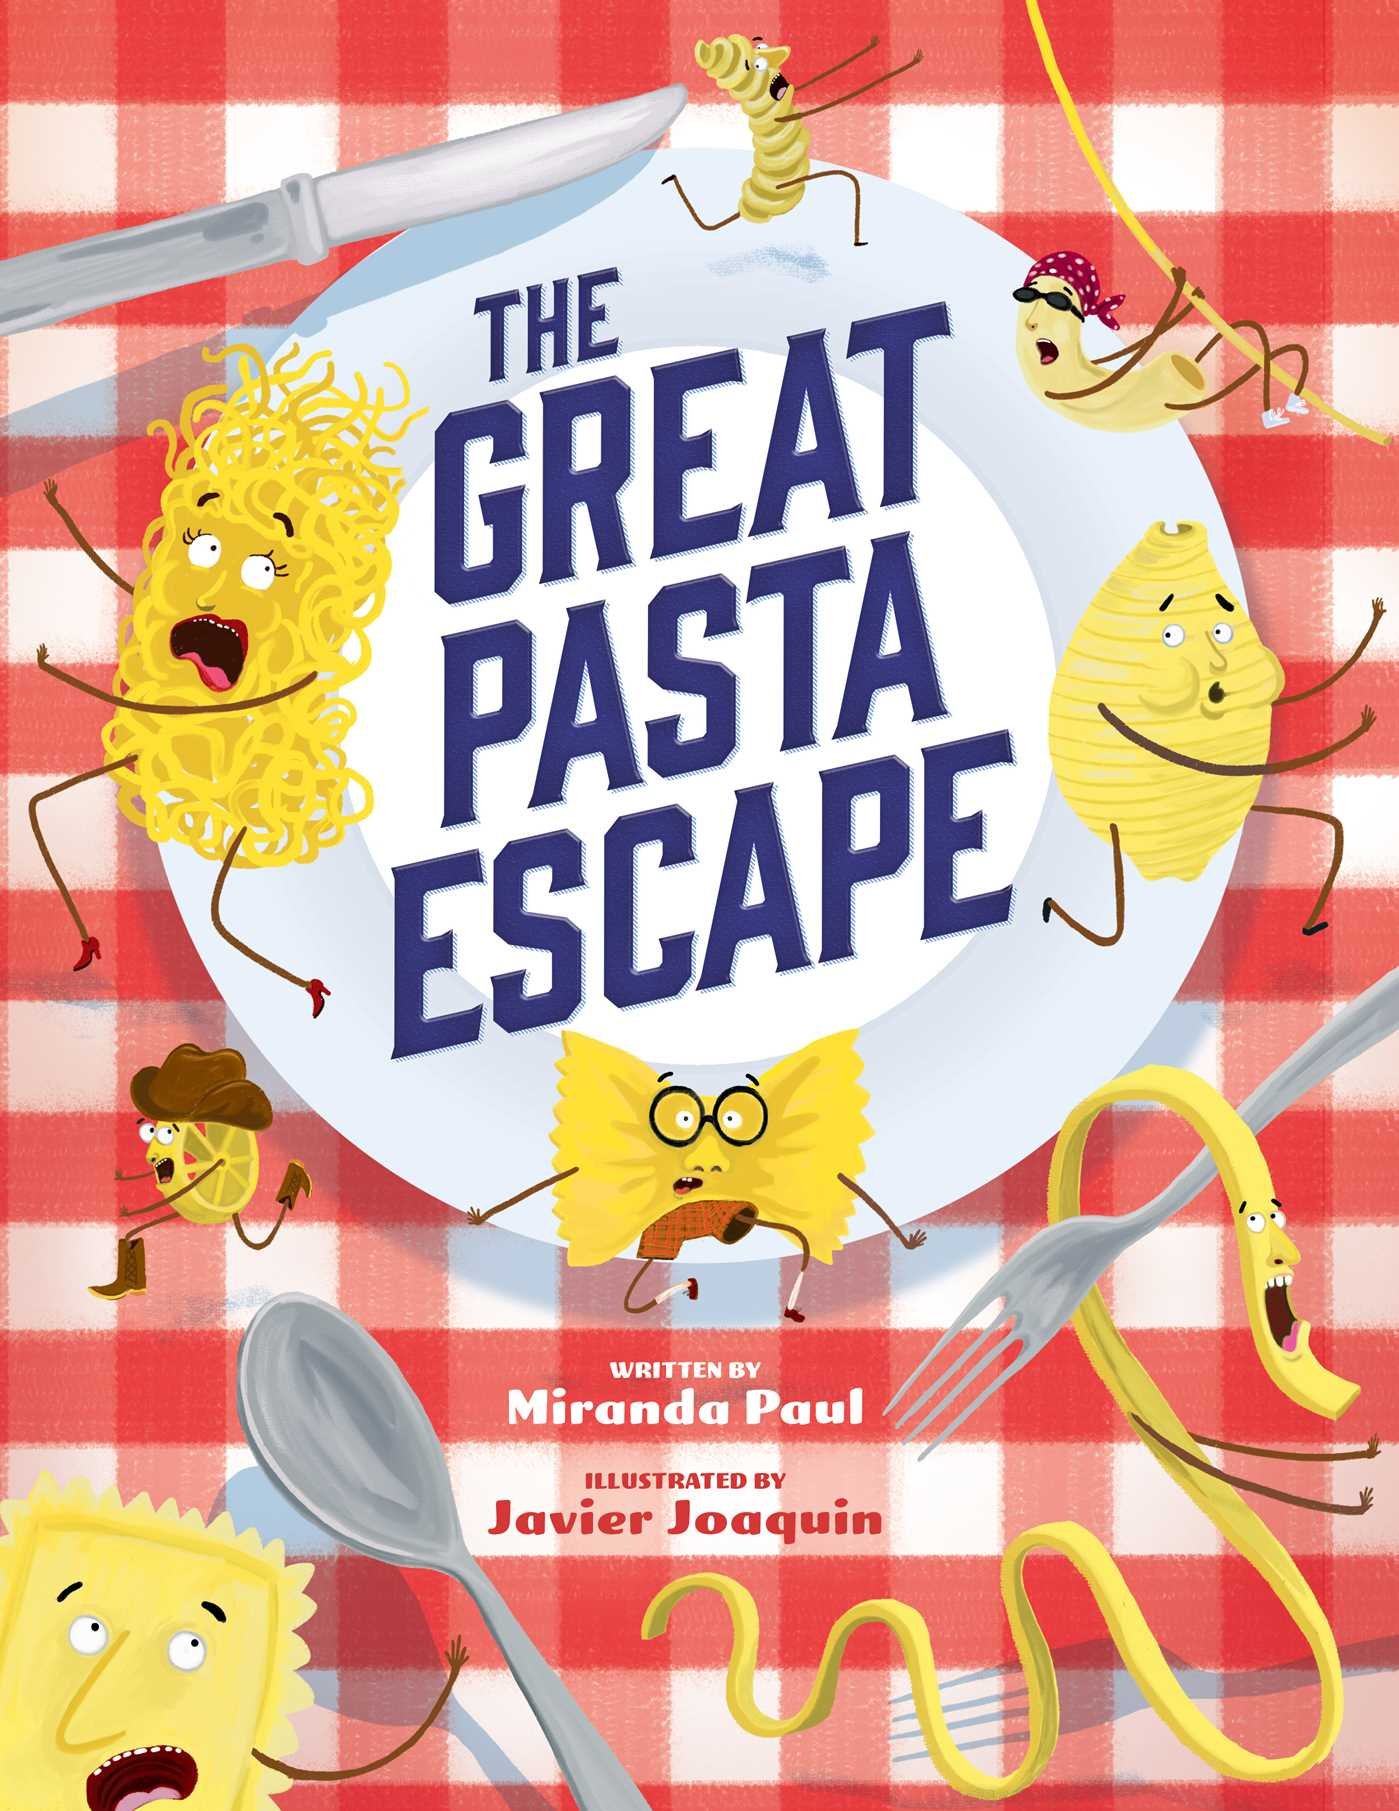 The Great Pasta Escape by Miranda Paul